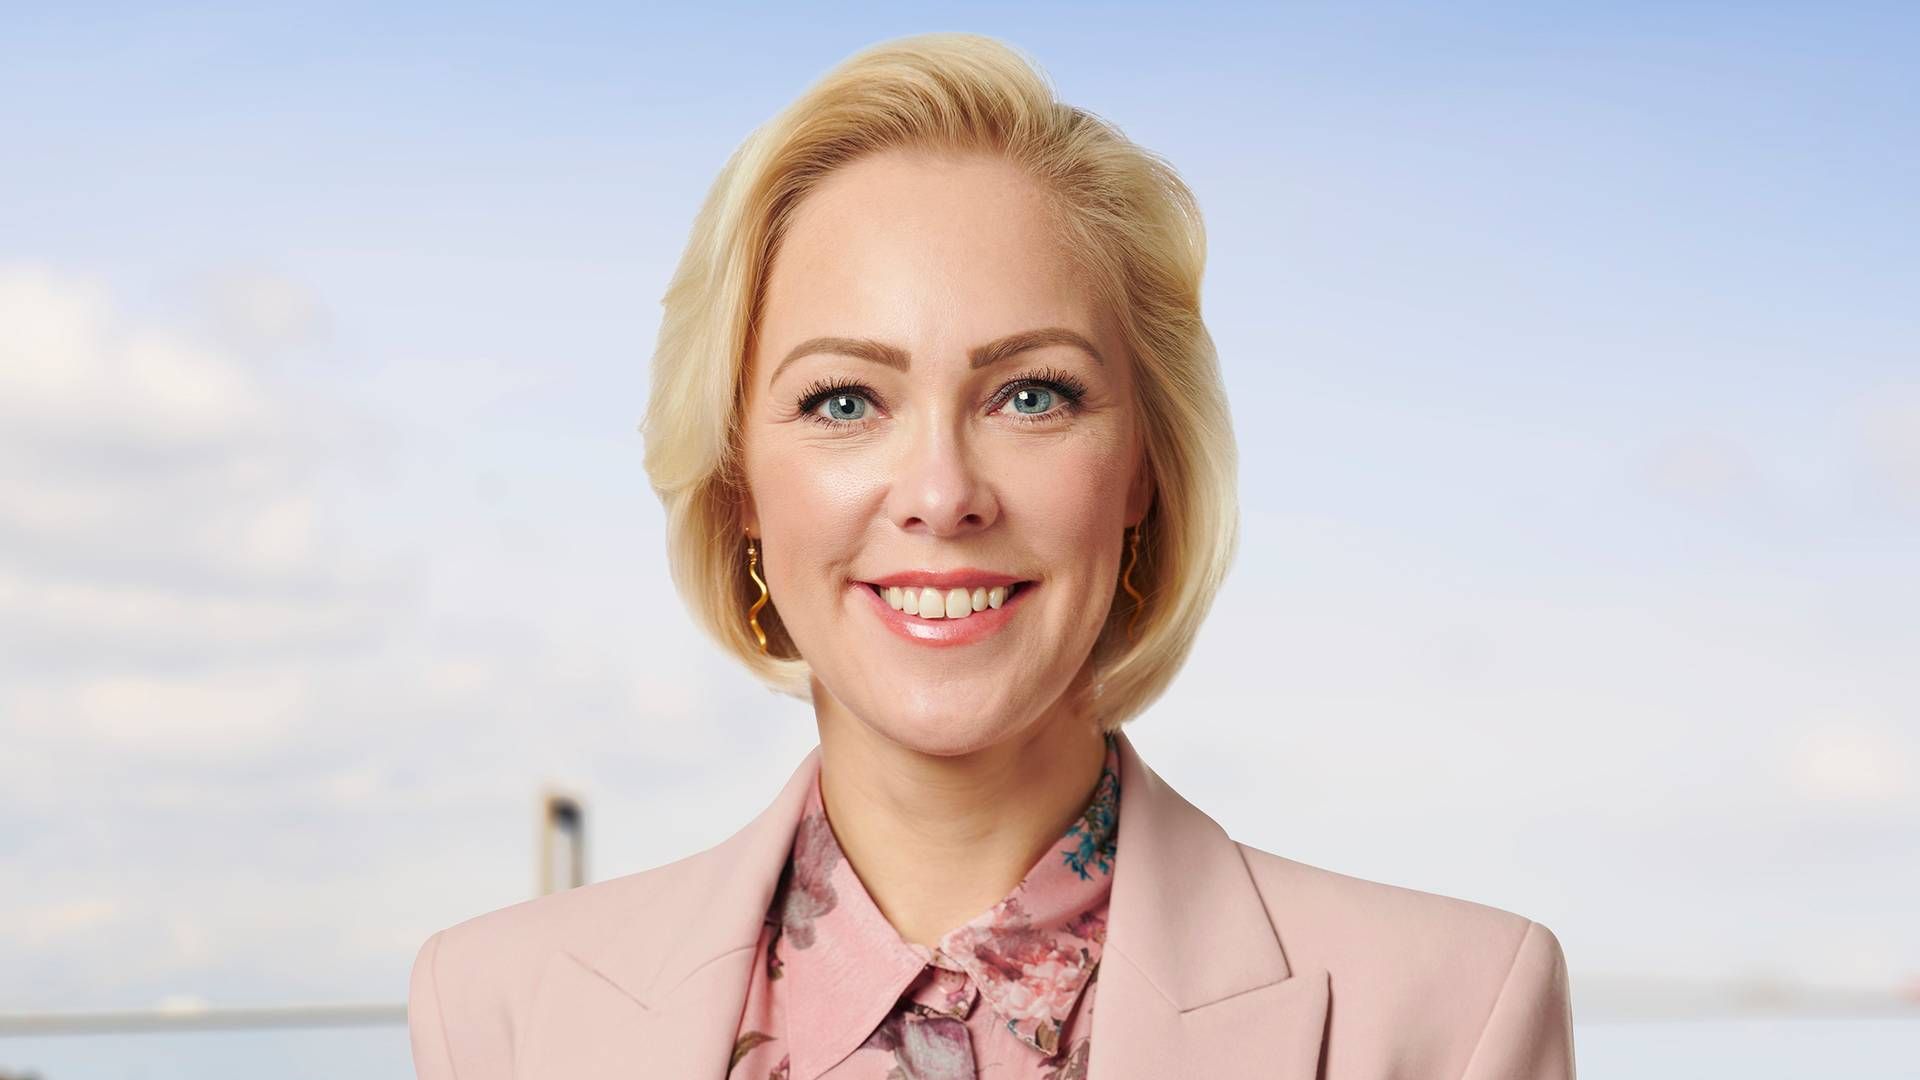 Nina Østergaard Borris overtog sidste år posten som adm. direktør i familievirksomheden USTC efter sin far Torben Østergaard-Nielsen. | Foto: Ustc / Pr